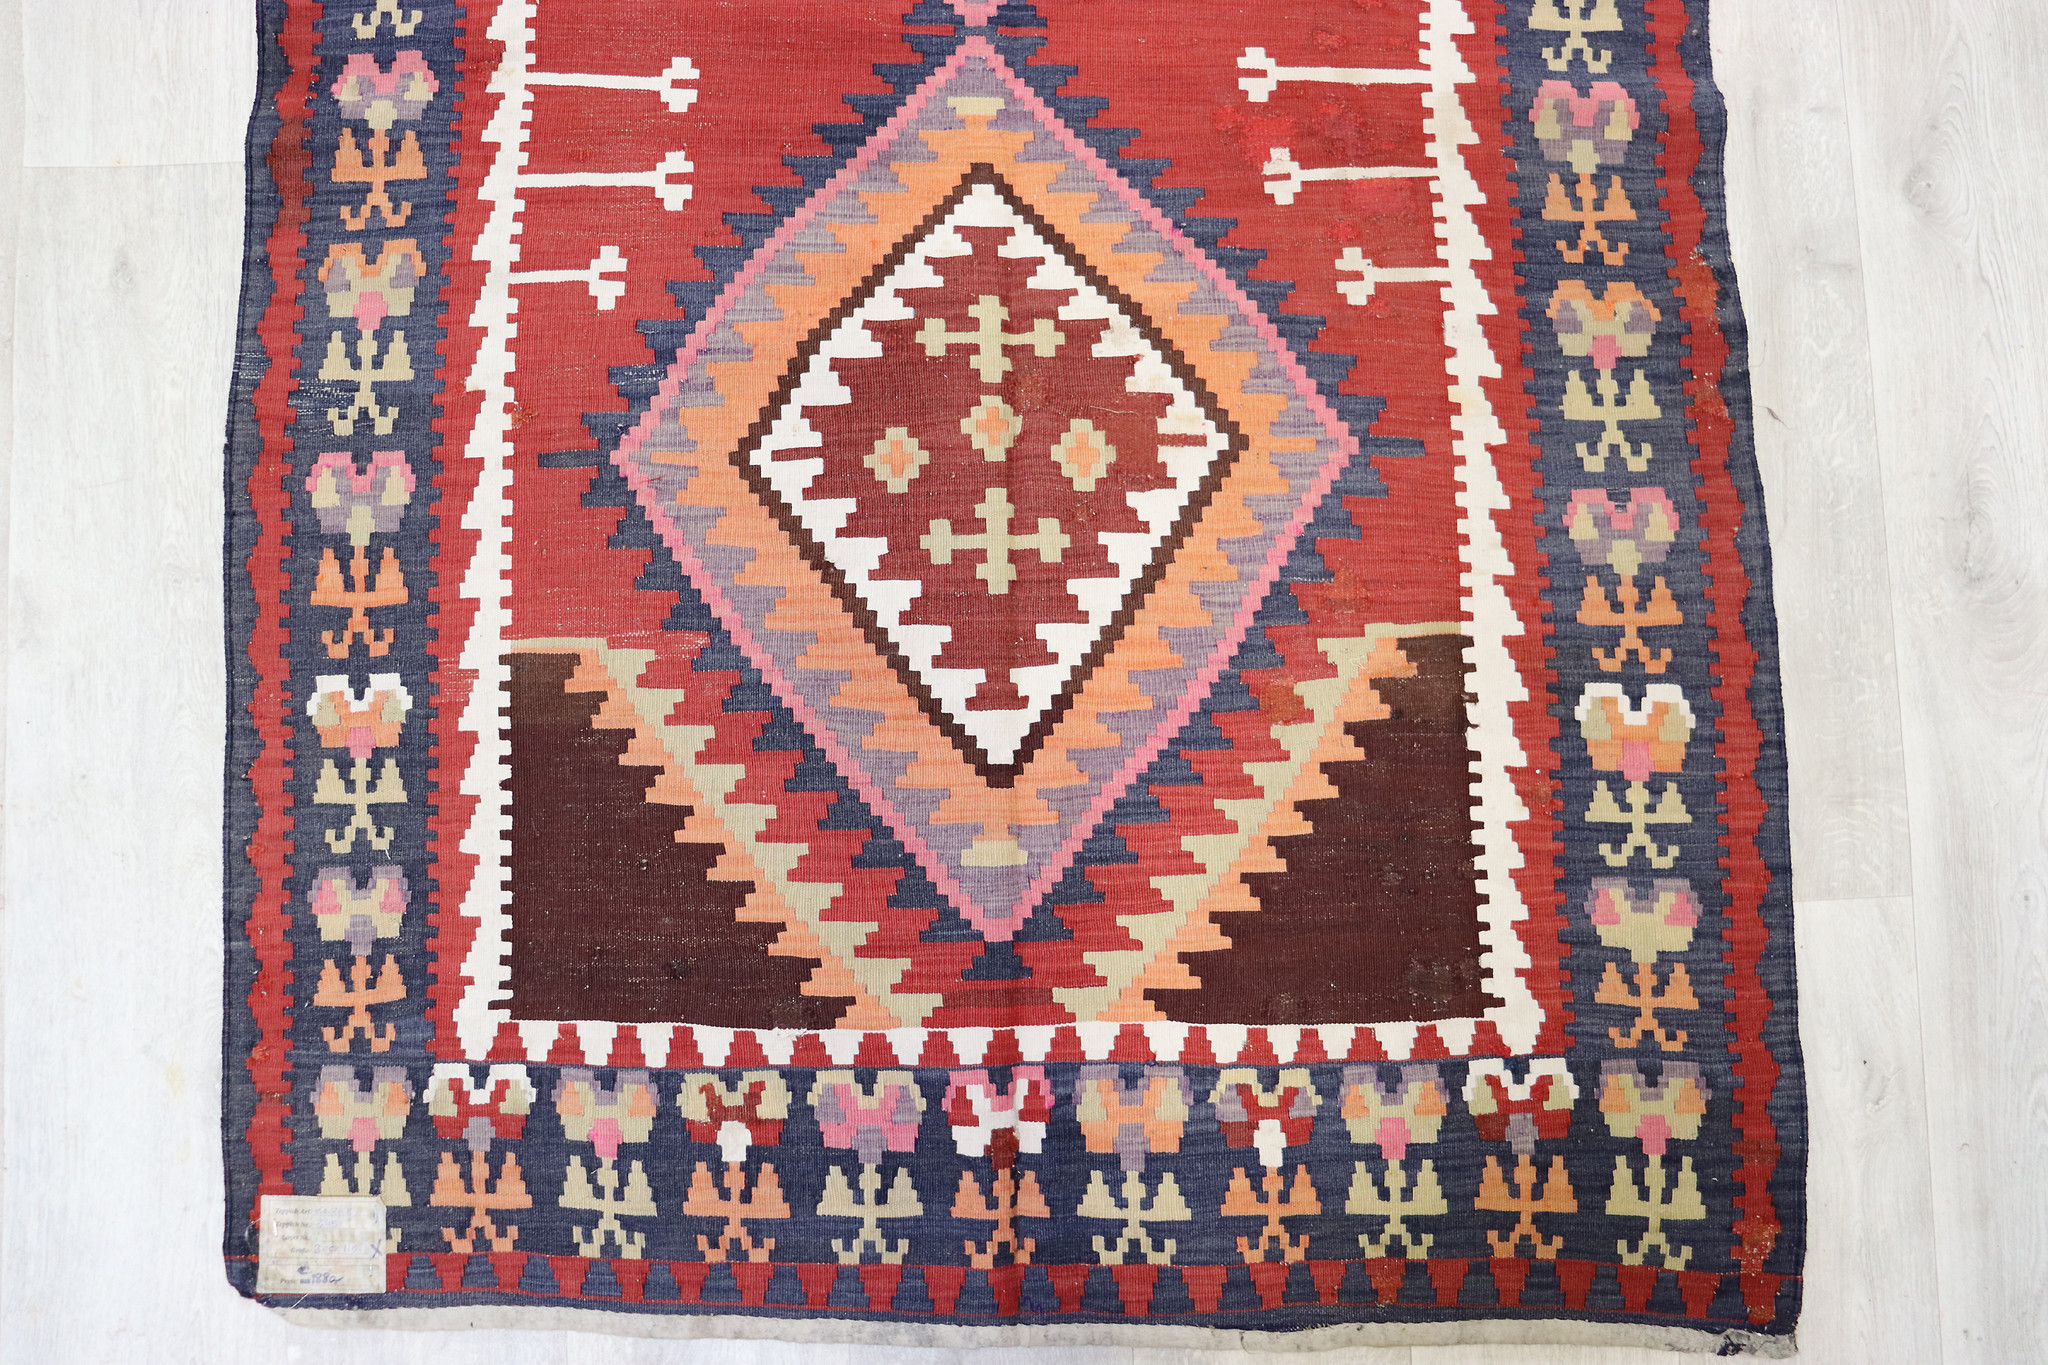 305x115 cm Antique very rare oriental Fine  nomadic caucasian Kilim rug No: - 345